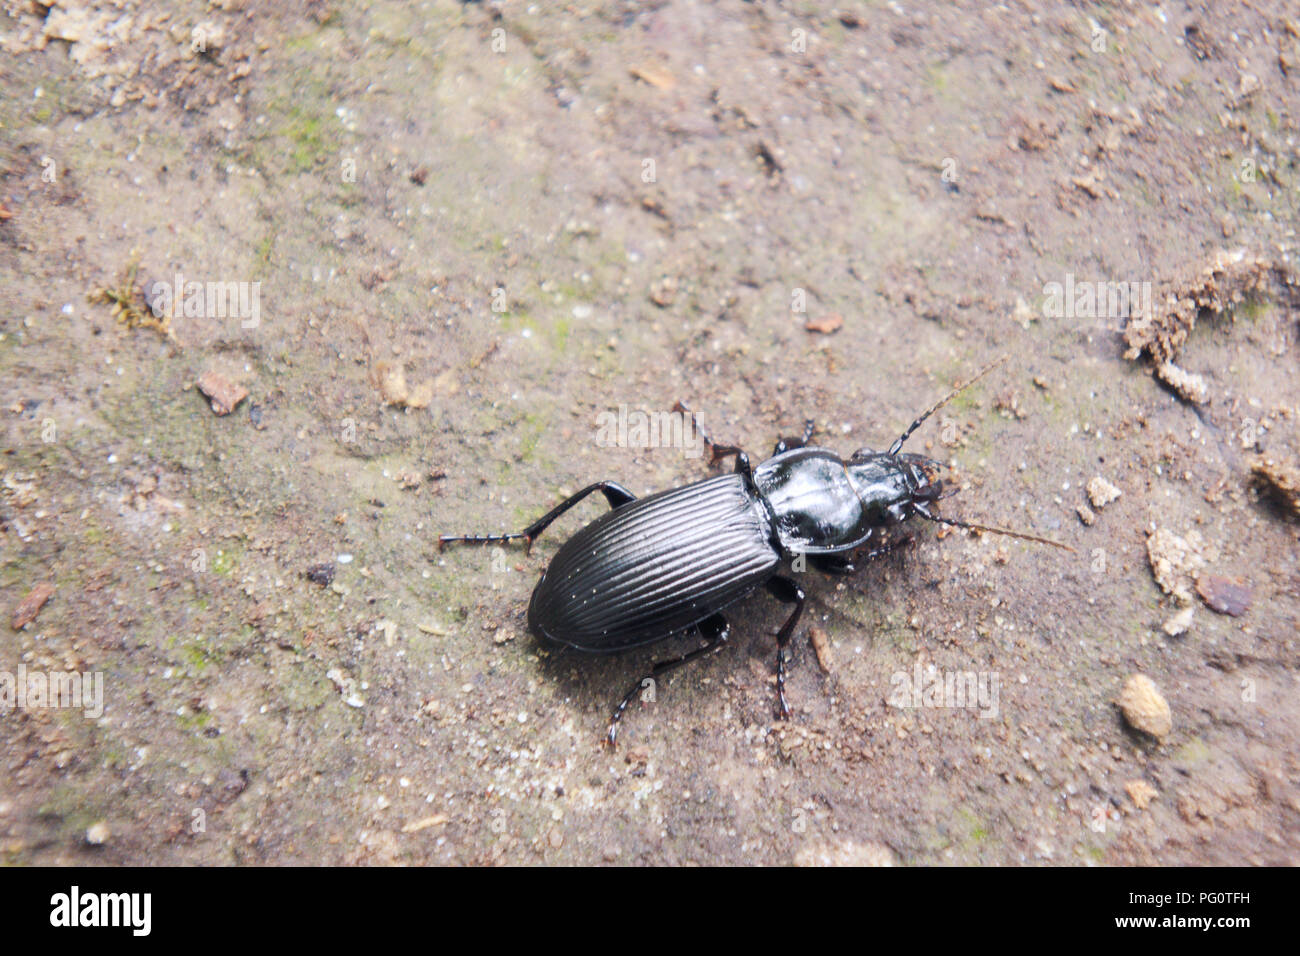 Un escarabajo negro de tierra en suelos fangosos. Foto de stock